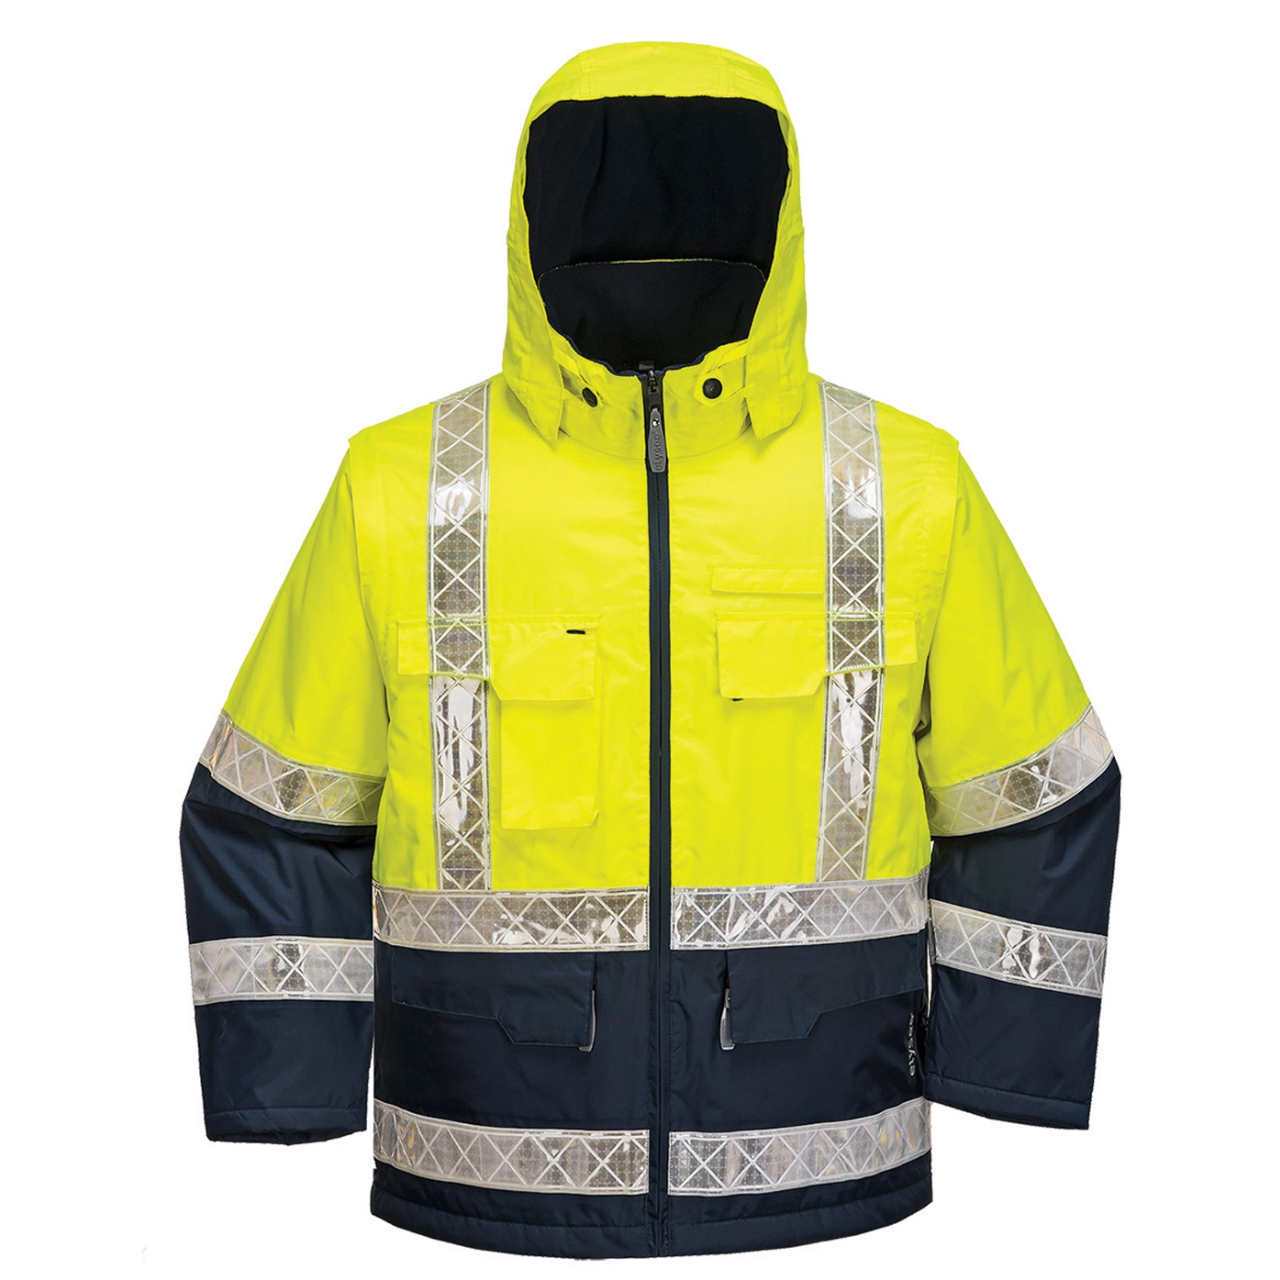 Hi-Vis Reflective Safety Parka Jacket